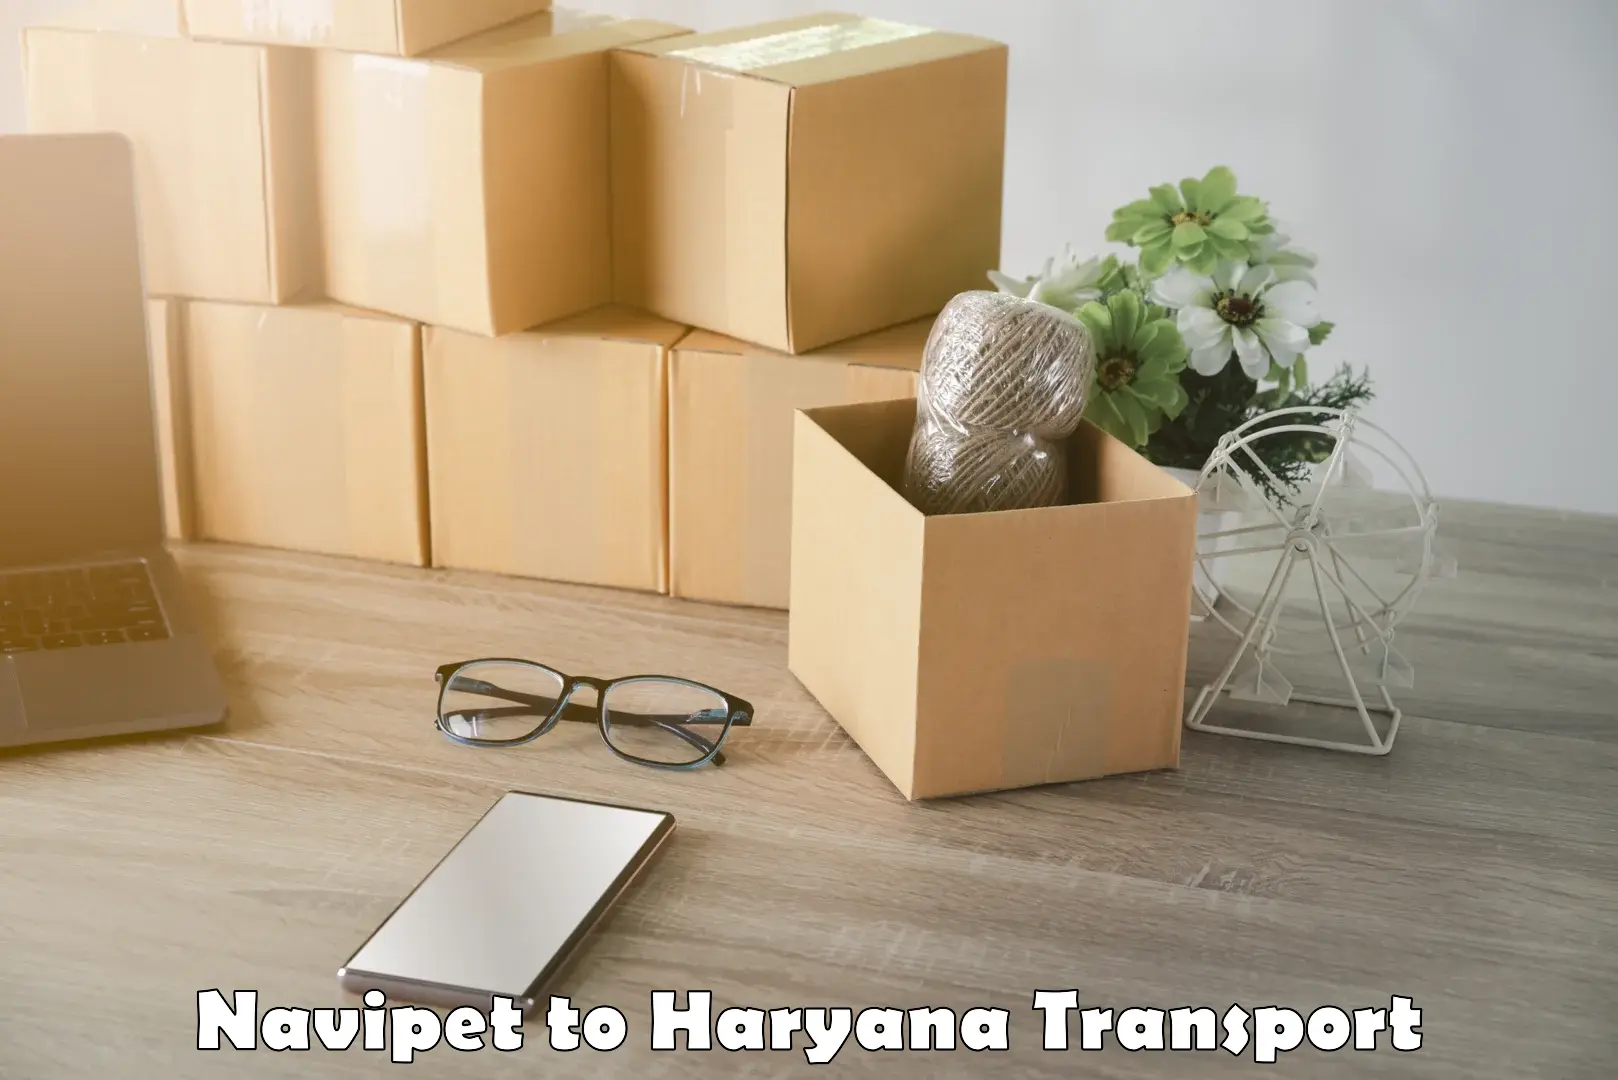 Online transport service Navipet to Hansi